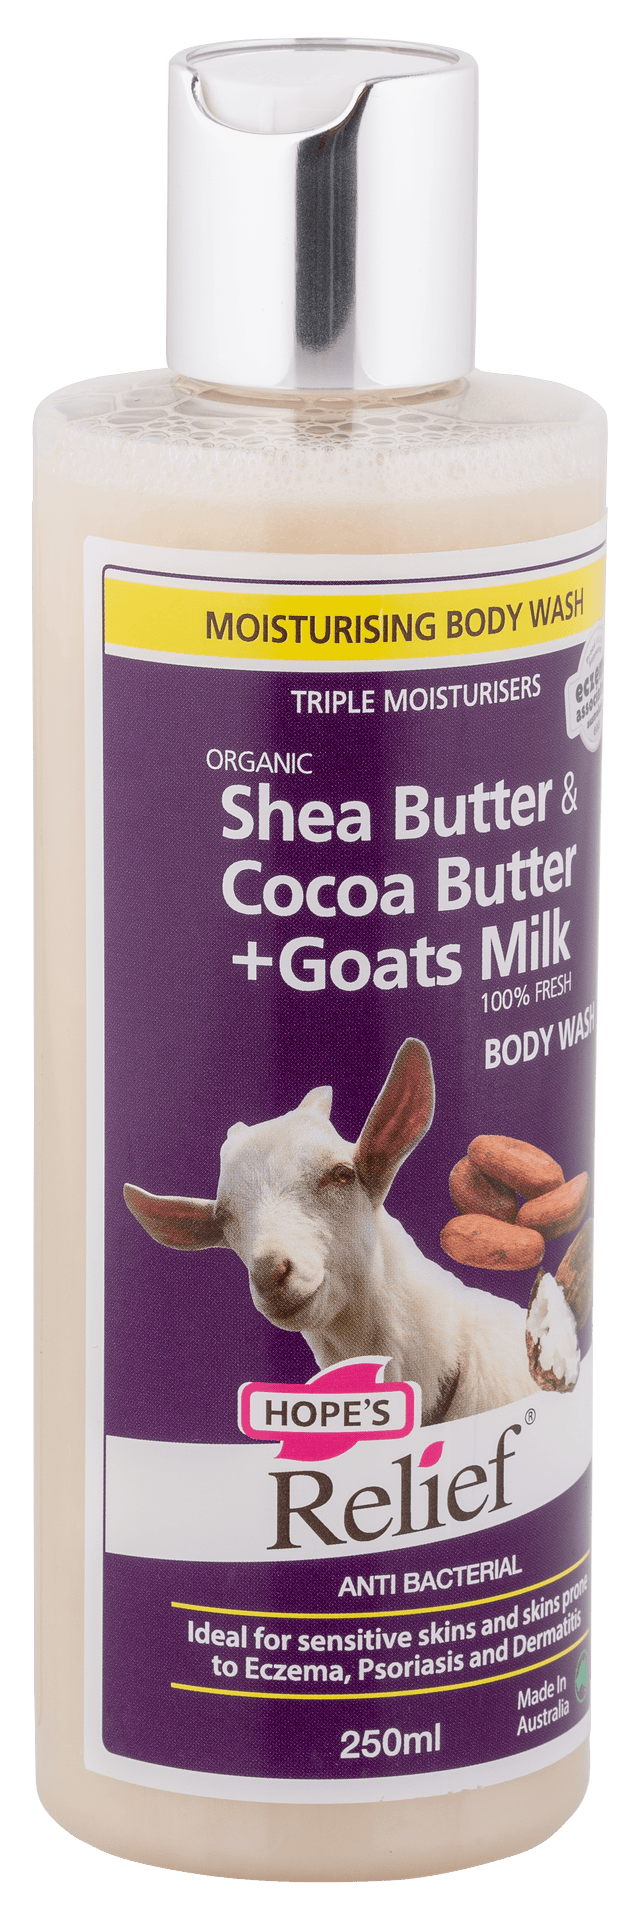 Buy Hope's Relief Goats Milk Body Wash